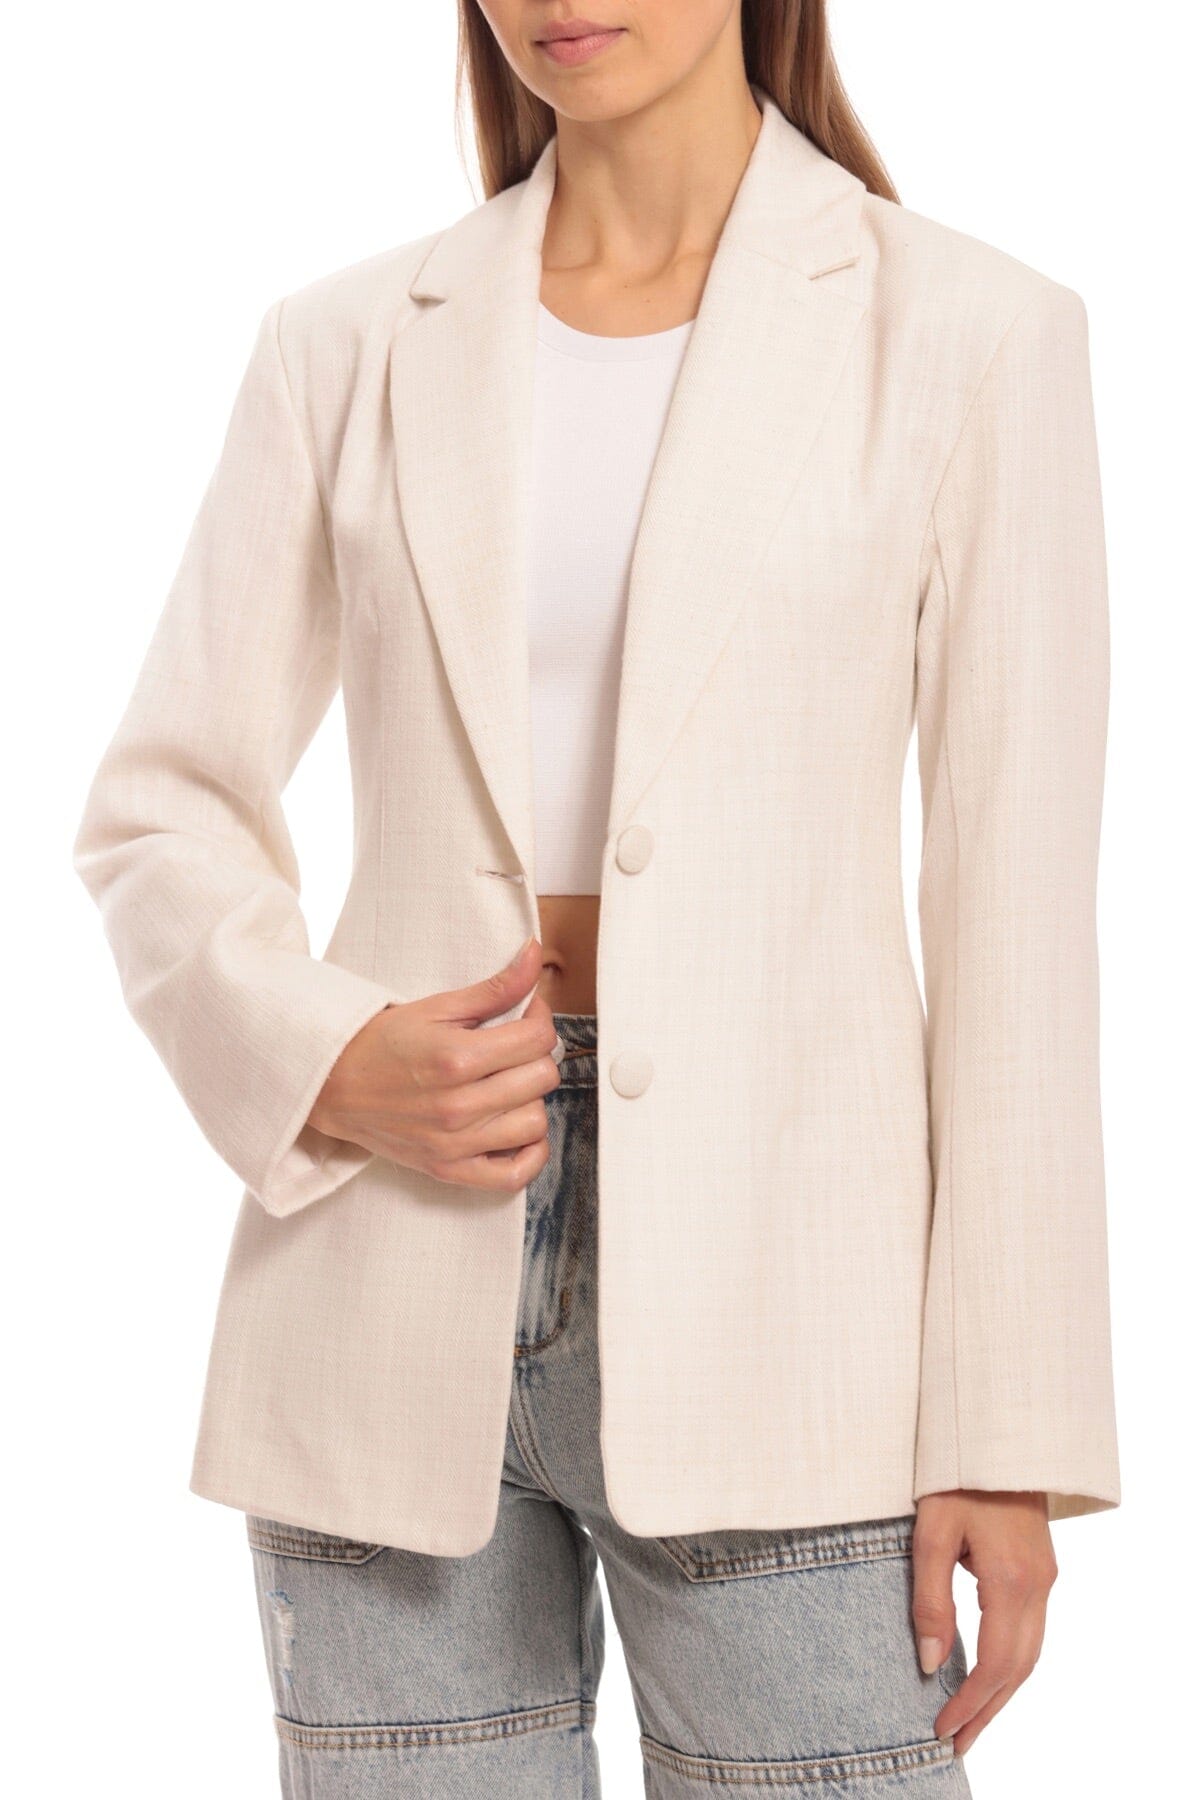 Textured Cotton Linen Sculpted Blazer white women's figure flattering designer outerwear Spring fashion